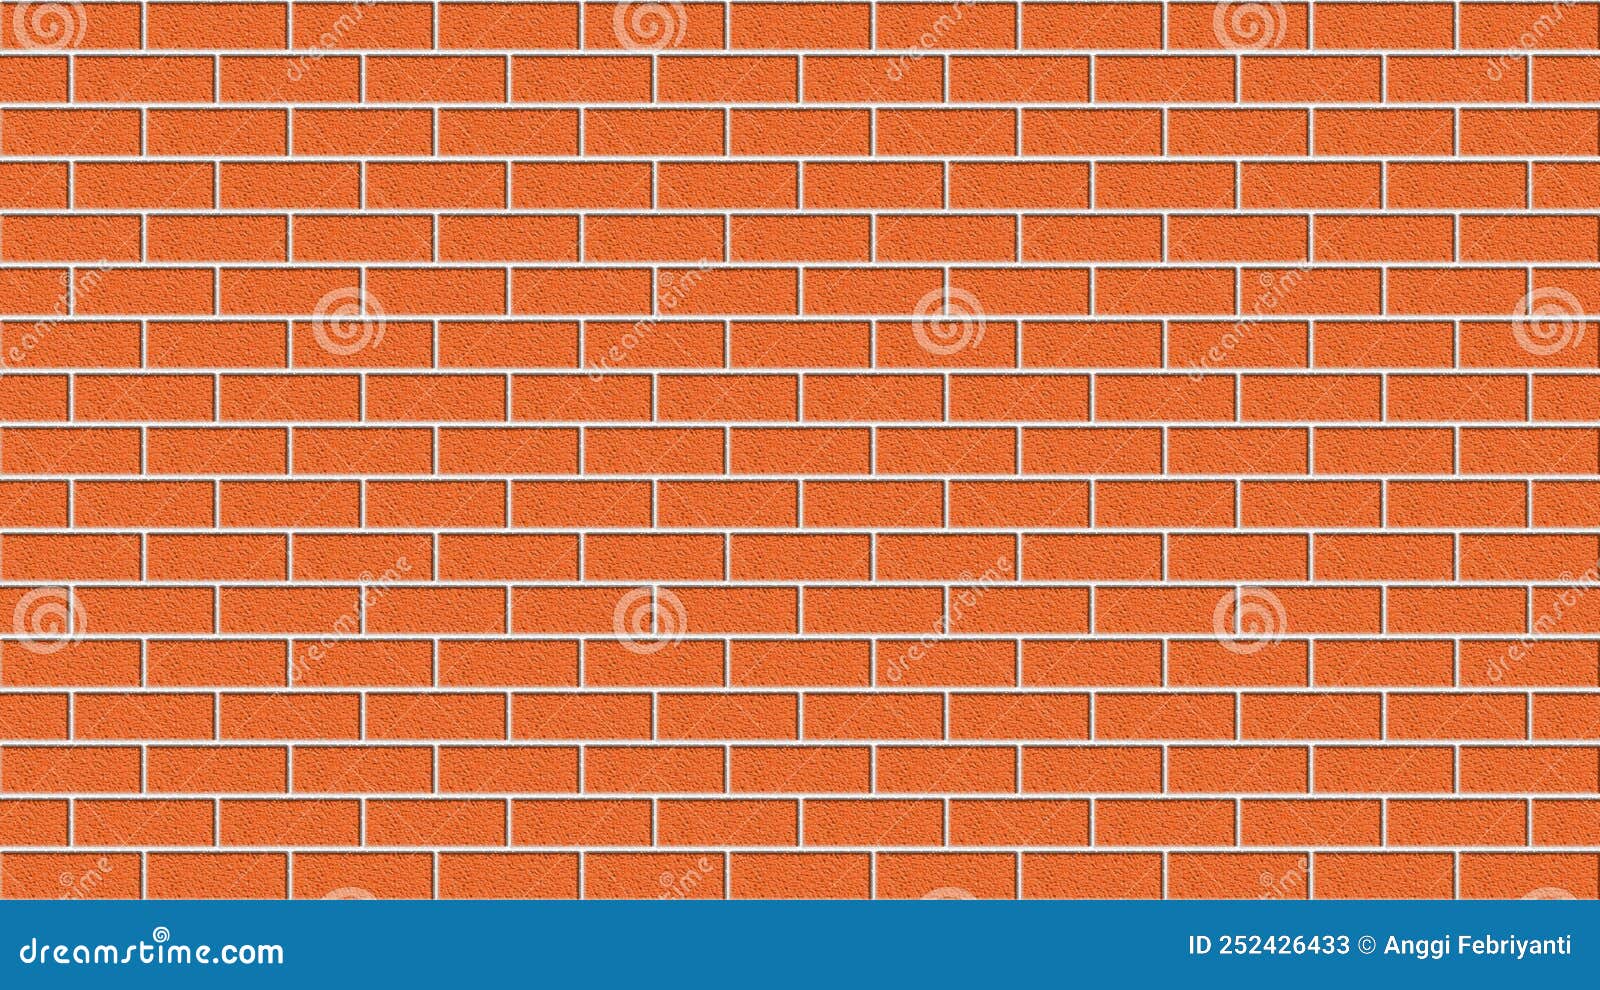 Tường gạch (Brick Wall Background) là chi tiết trang trí phổ biến trong nhiều không gian nội thất. Hình ảnh này sẽ cho bạn cảm giác như đang đứng trước một bức tường gạch thật sự. Hãy cùng khám phá những thiết kế tuyệt đẹp với tường gạch trong hình ảnh này.